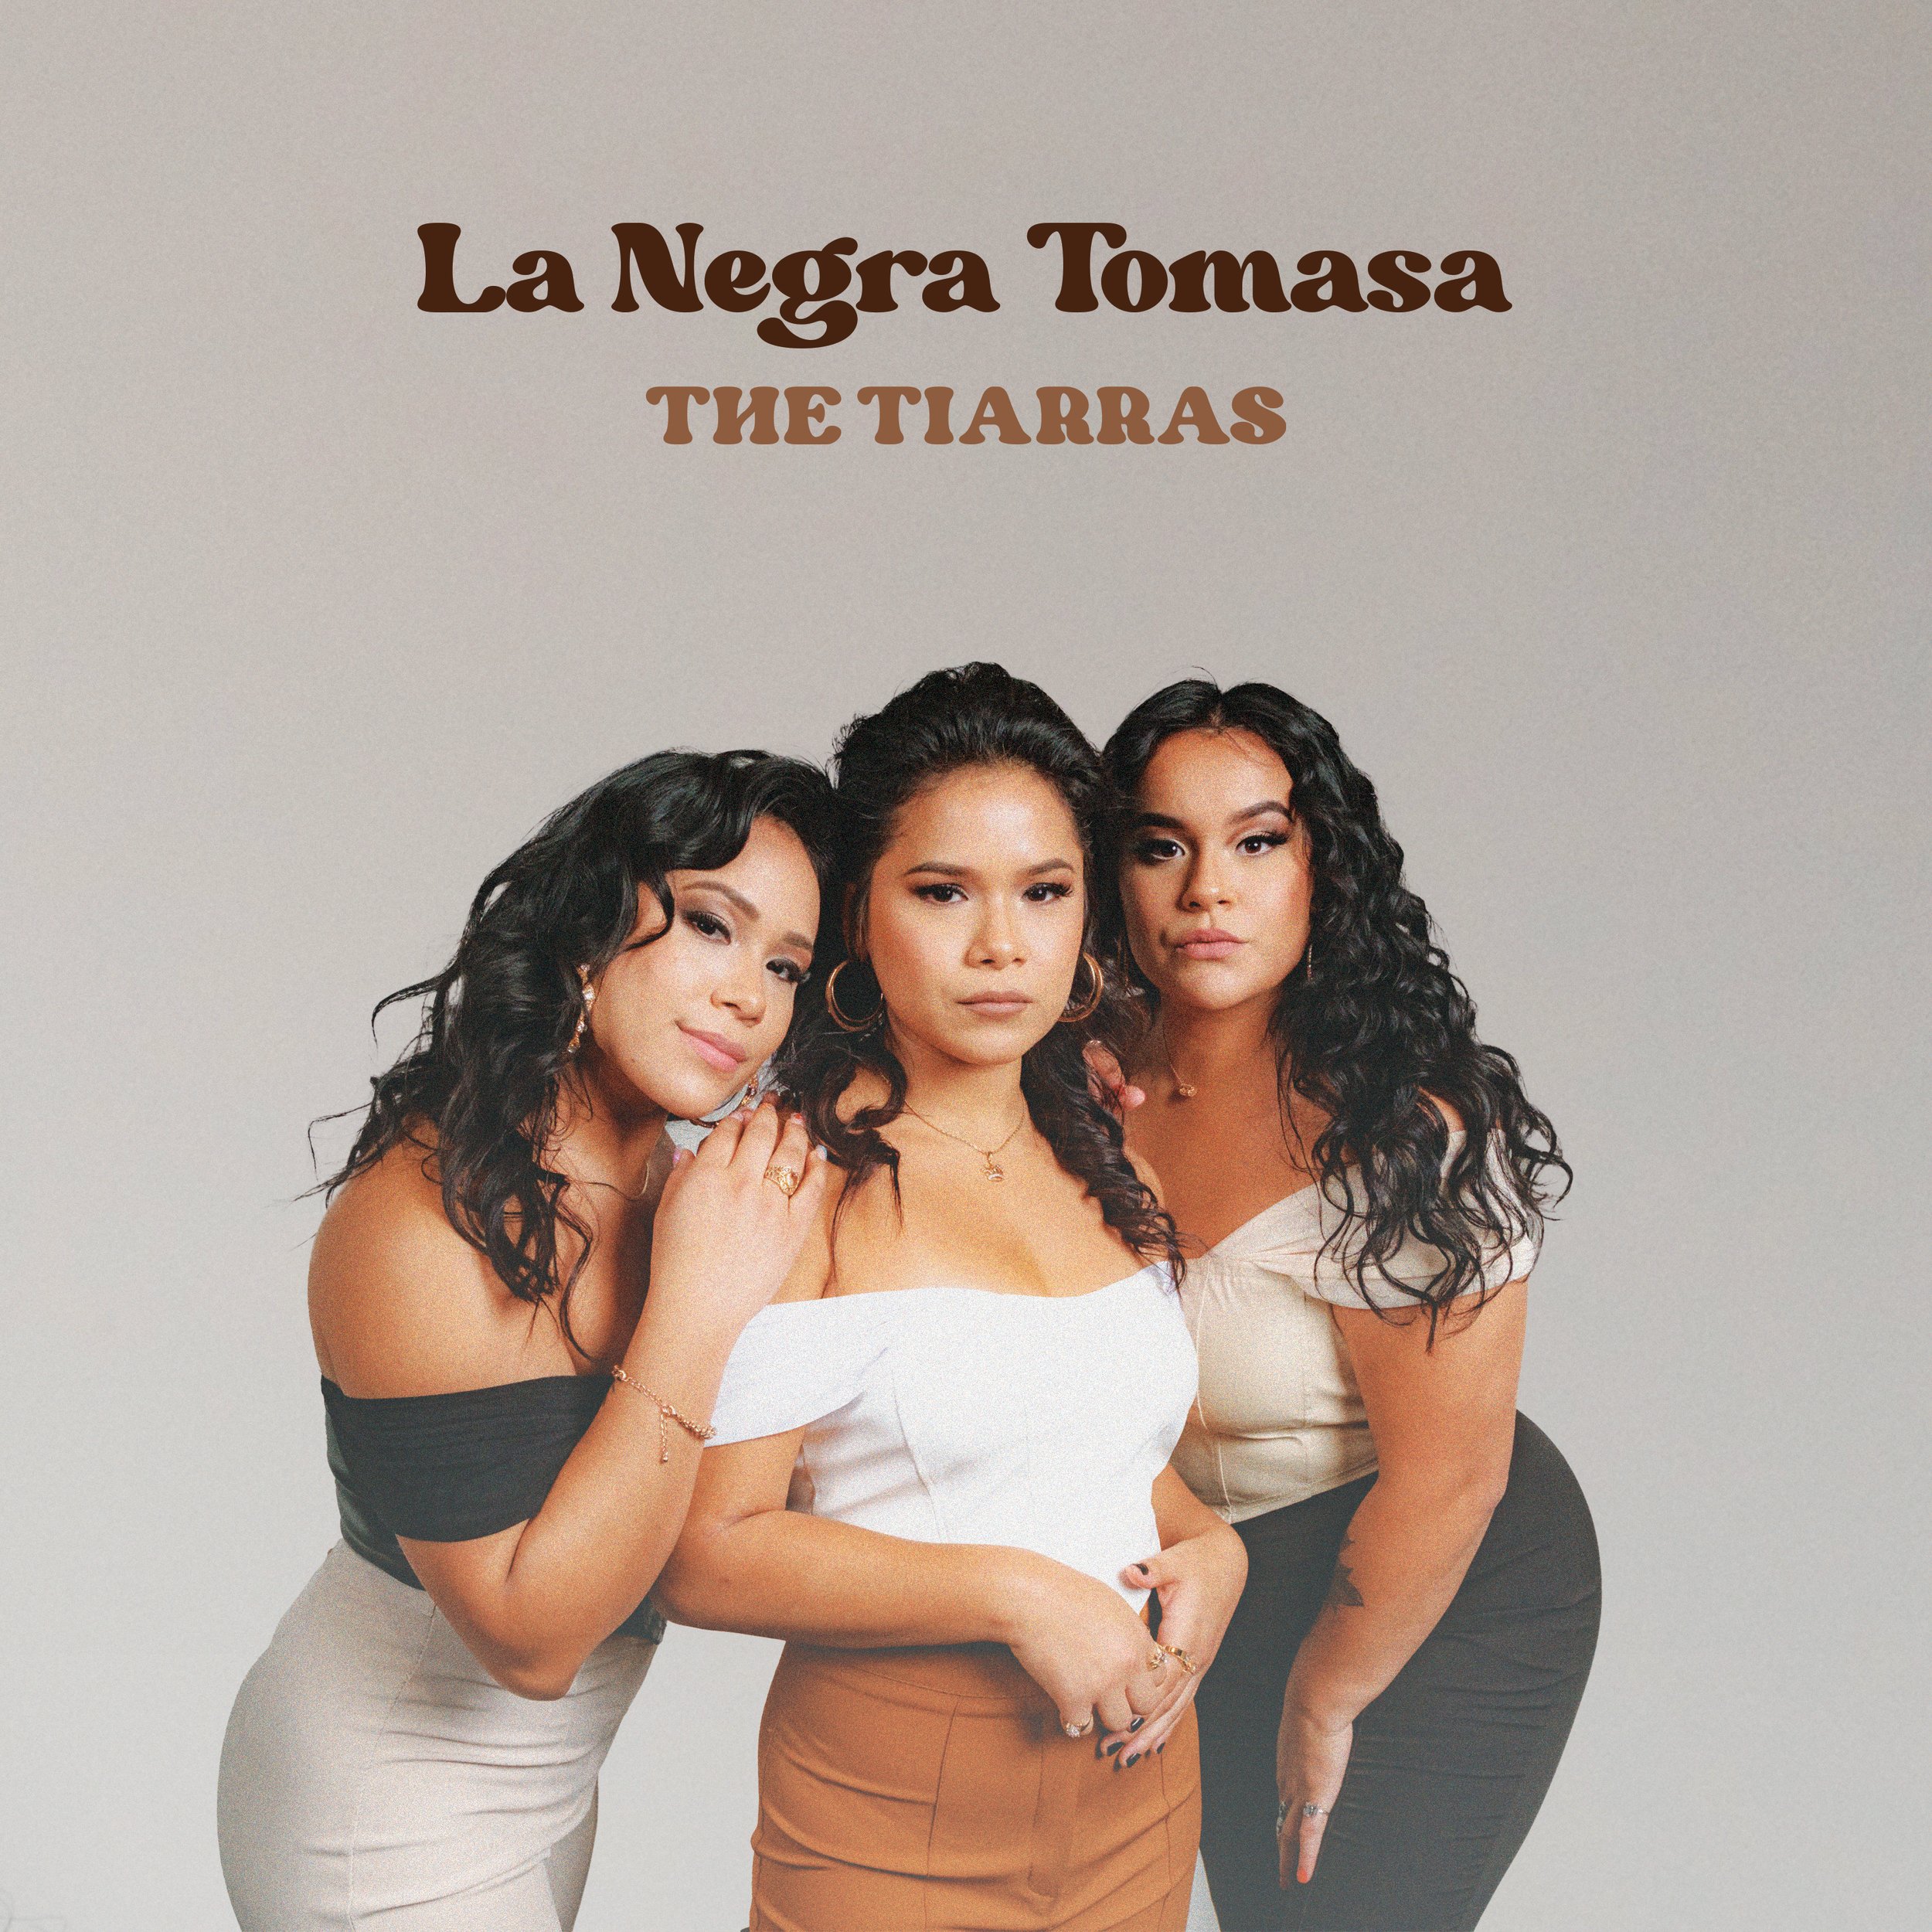 The Tiarras — La Negra Tomasa cover artwork